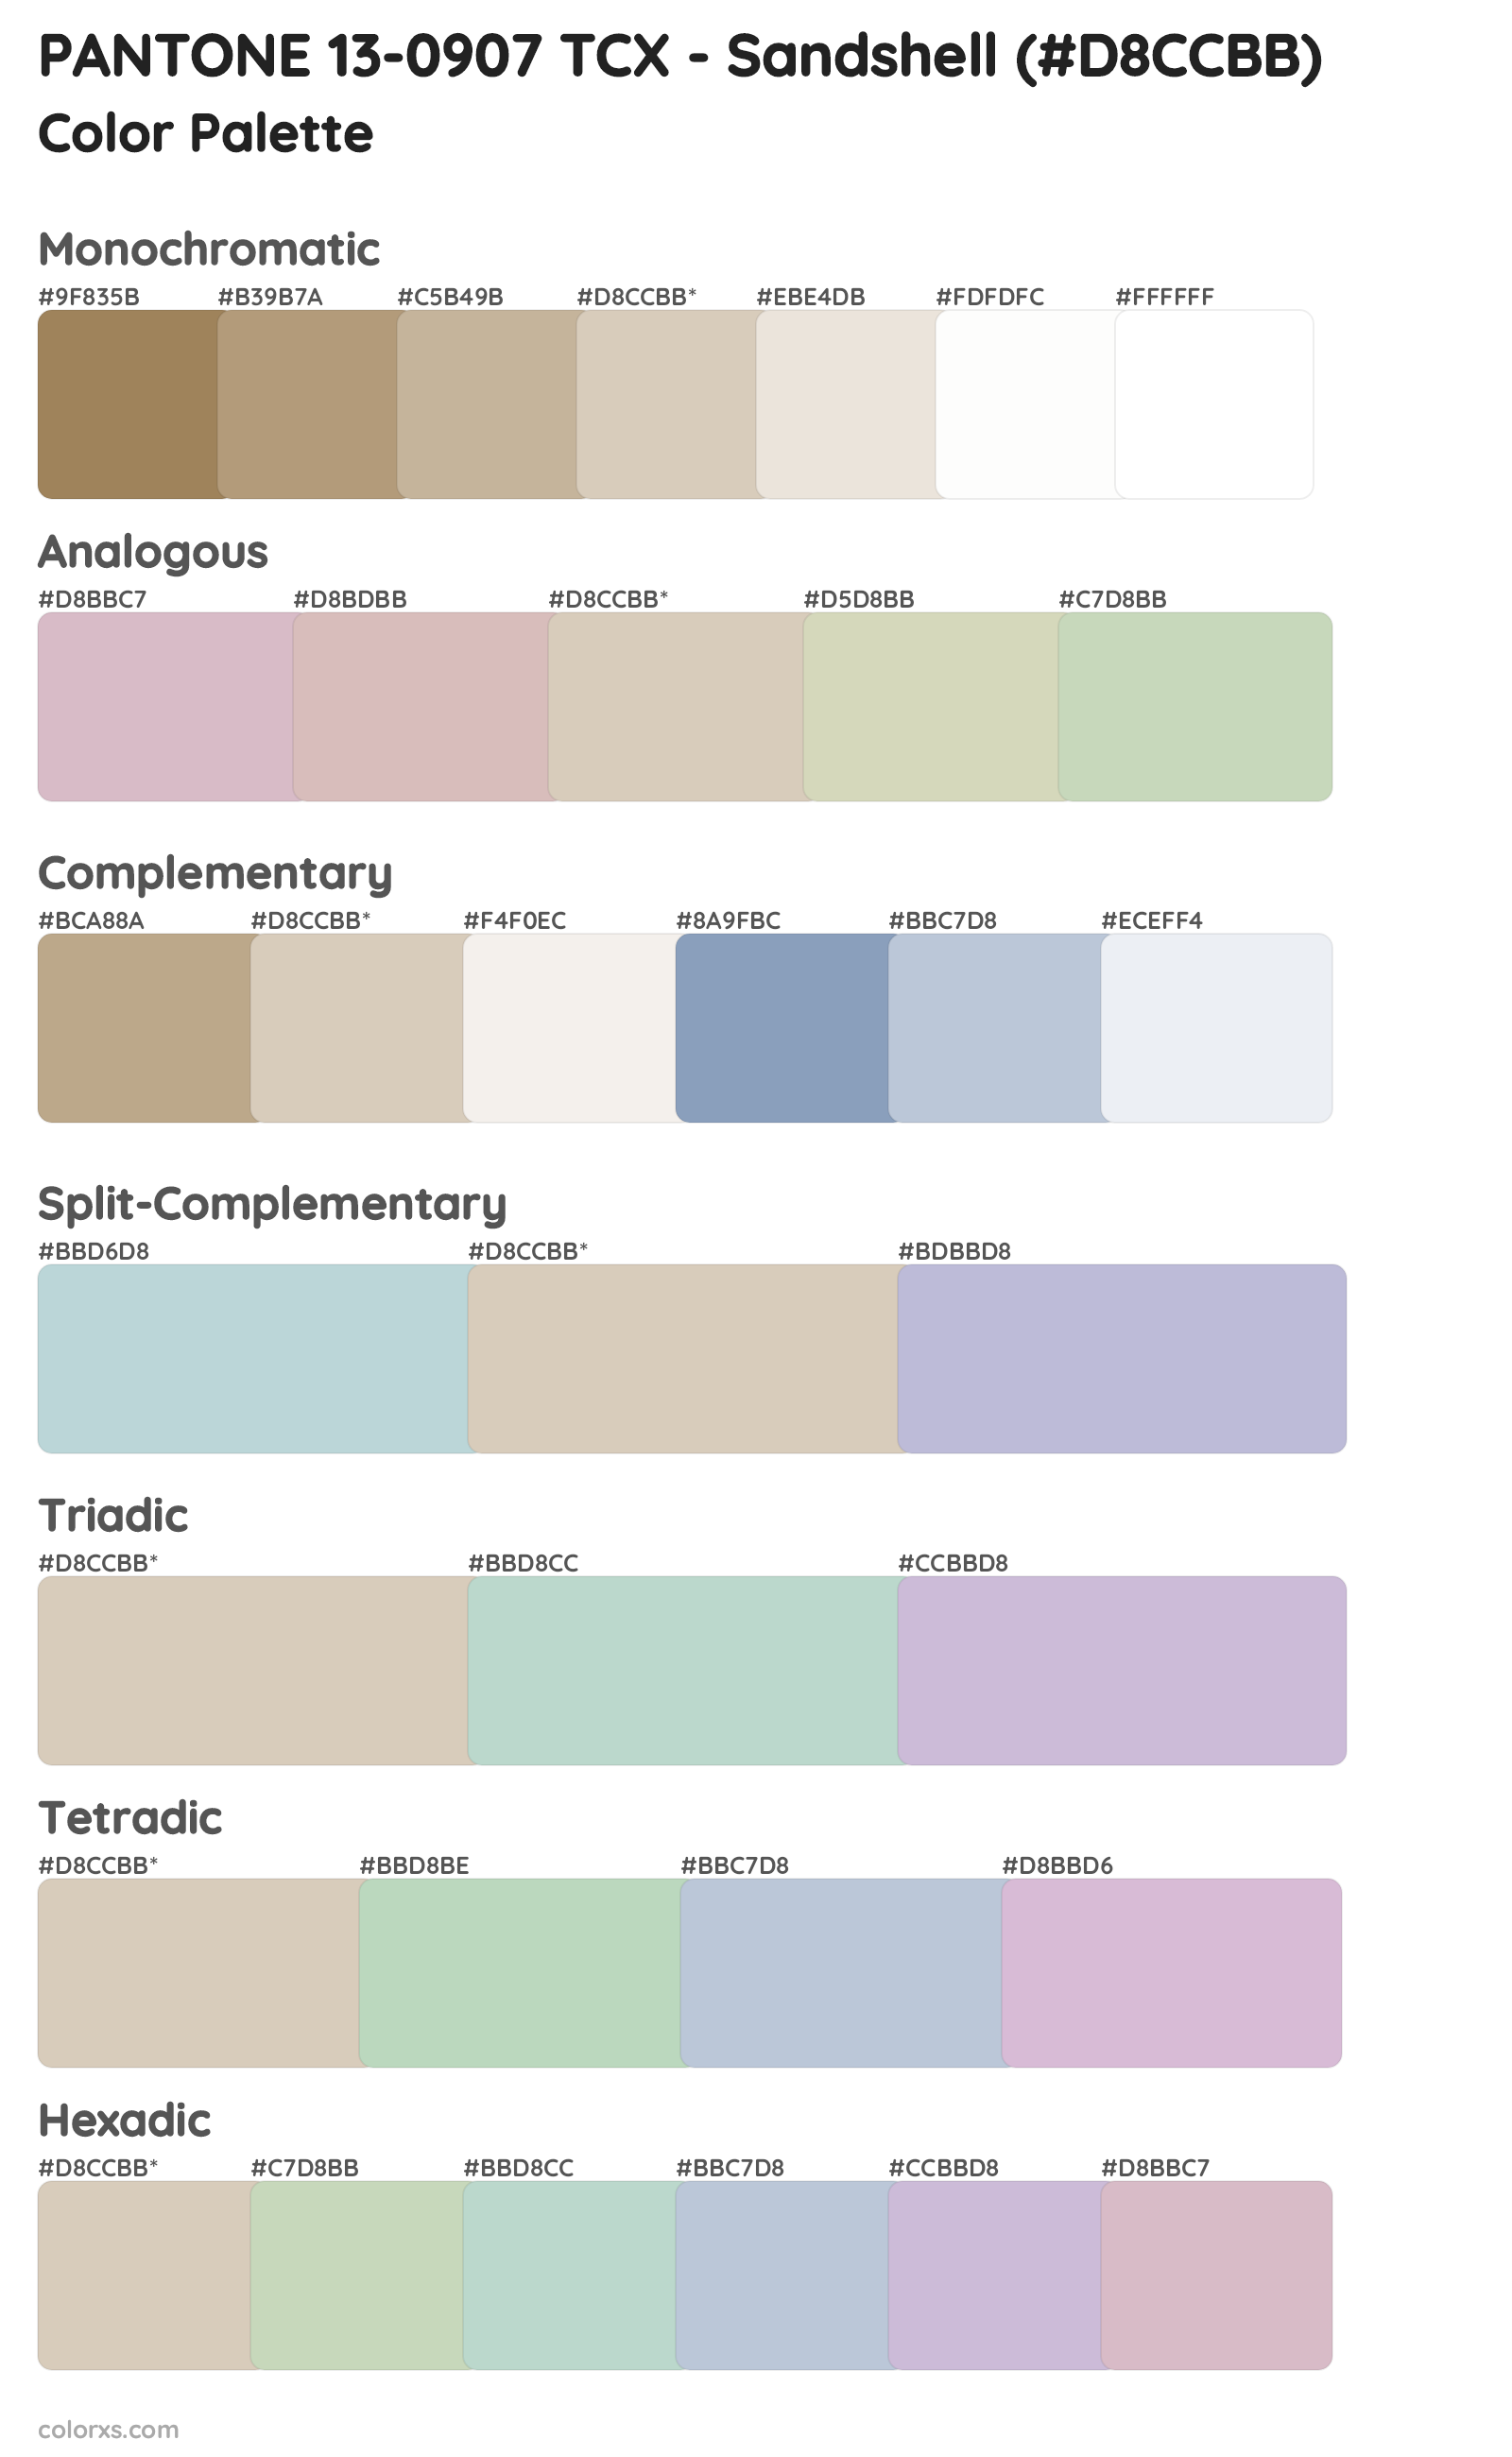 PANTONE 13-0907 TCX - Sandshell Color Scheme Palettes